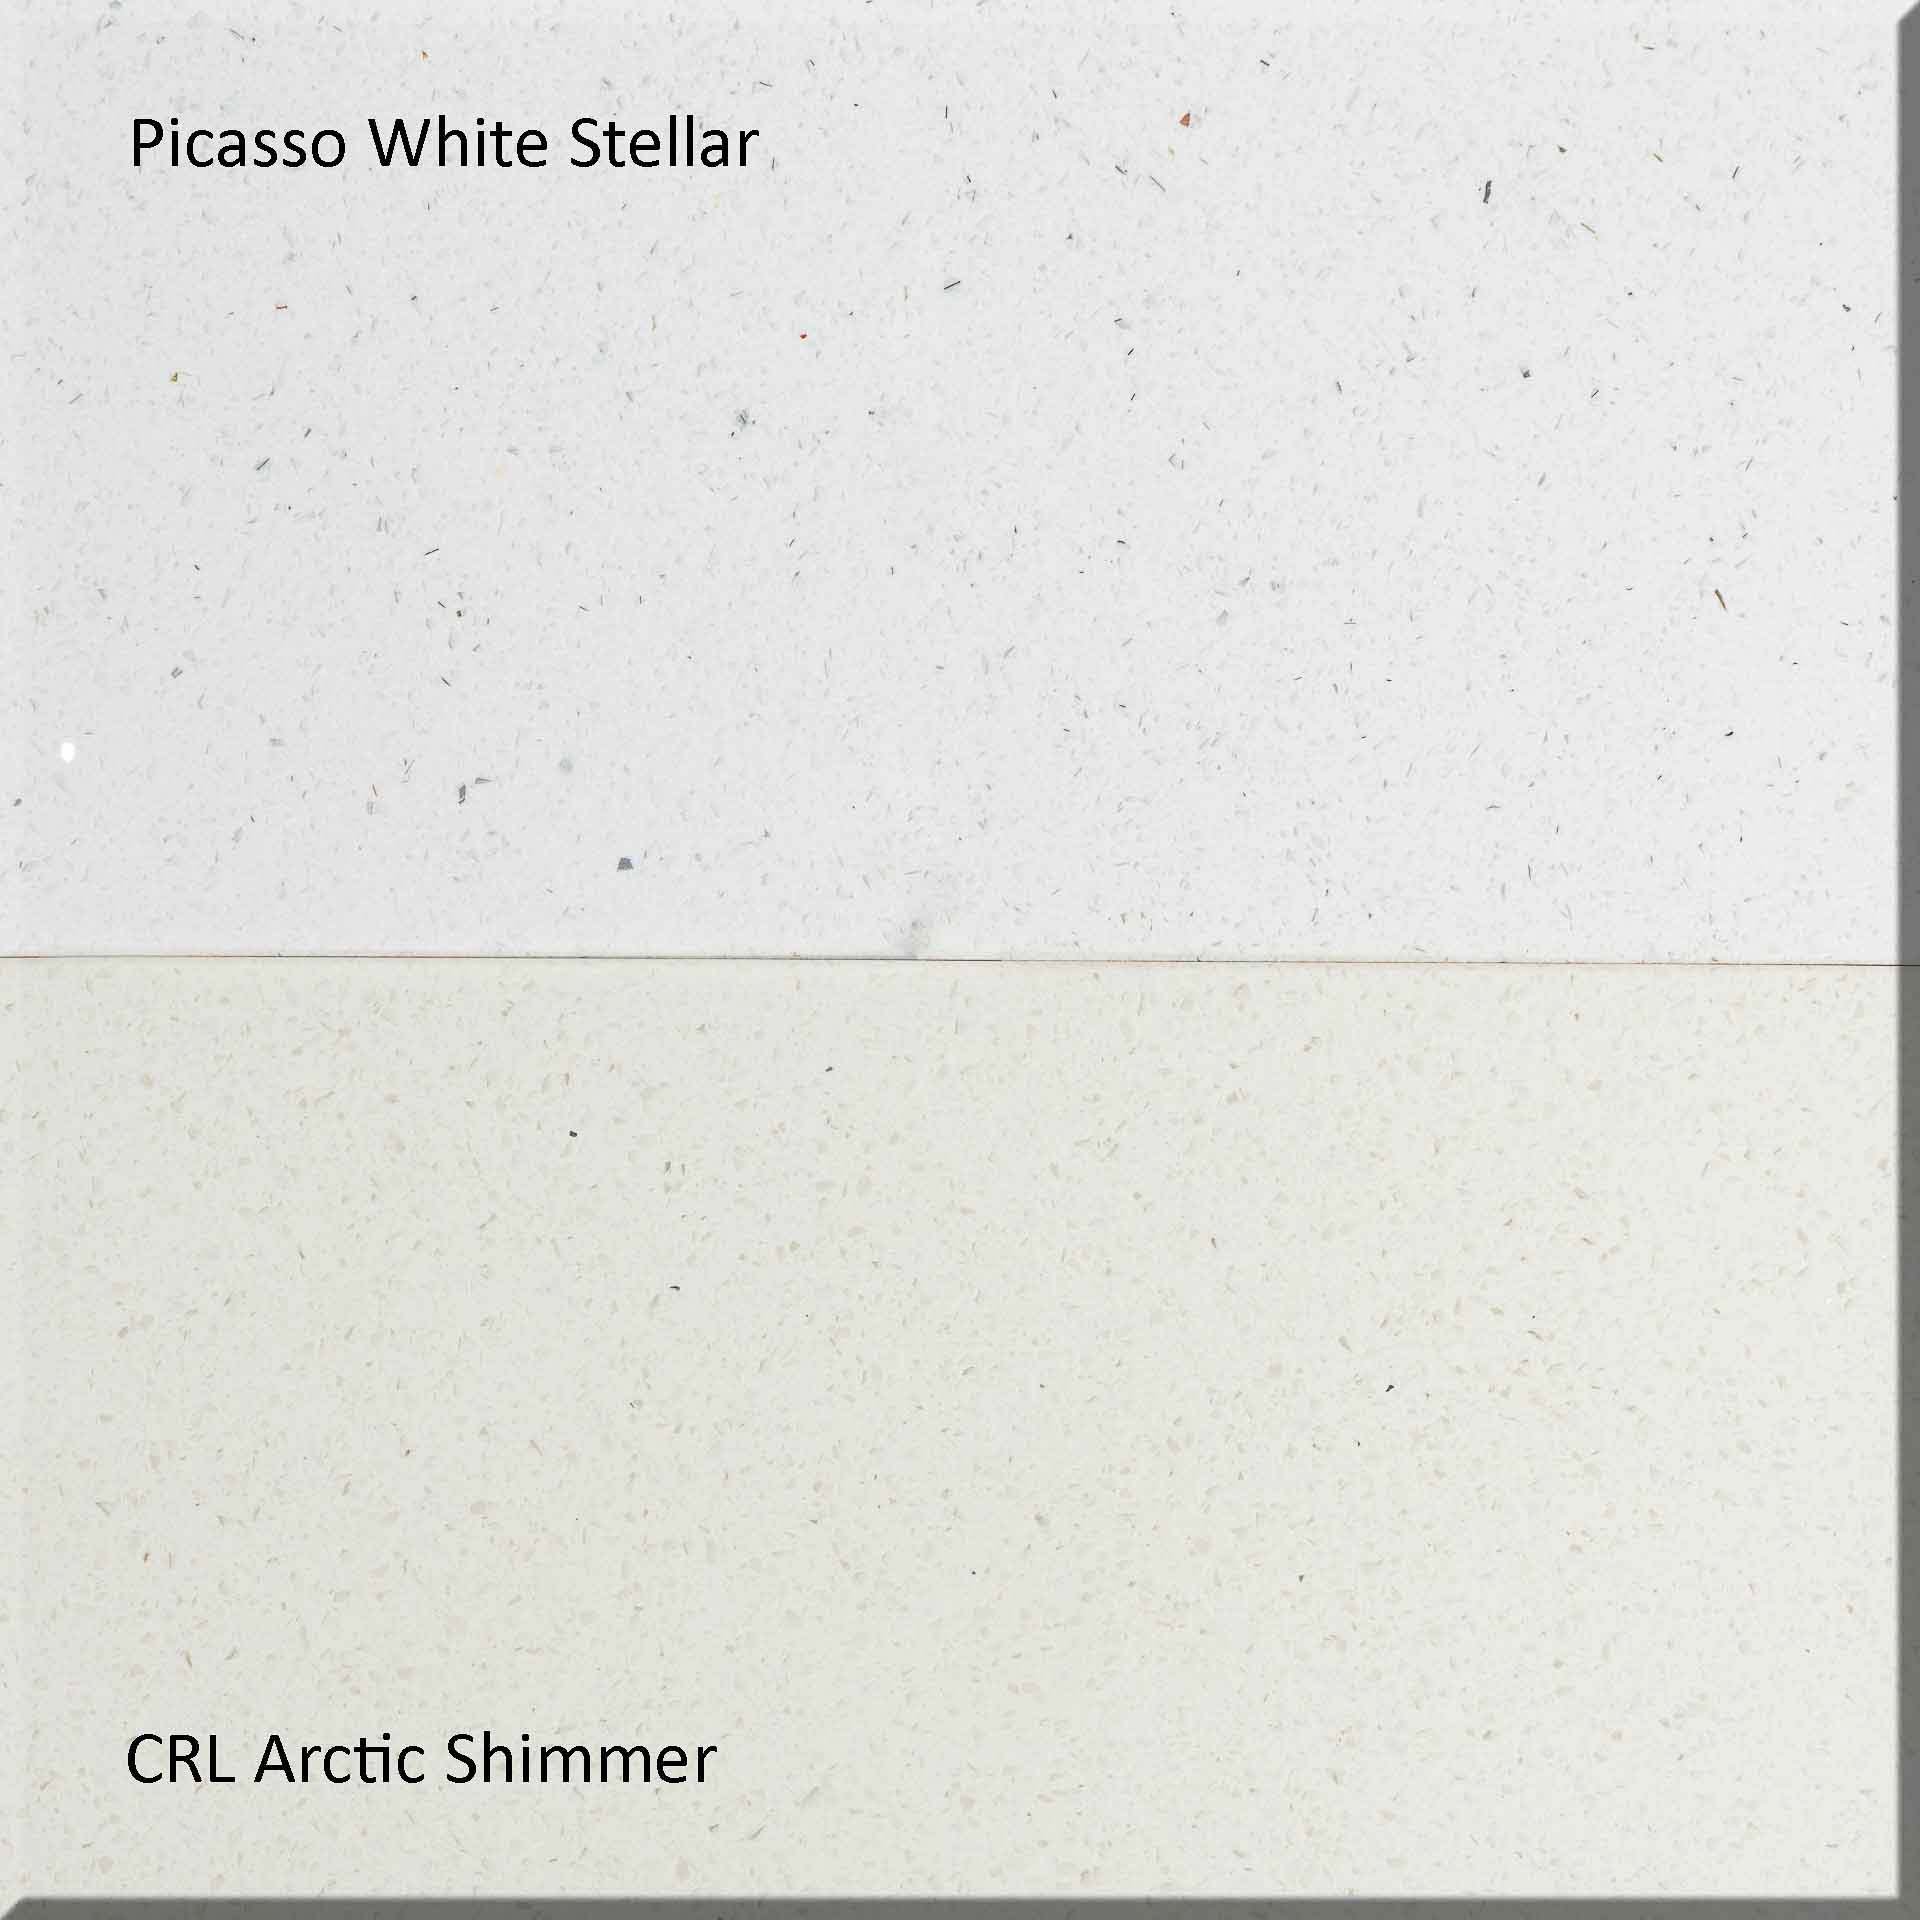 surrey-quartz-worktops-picasso-white-stellar-crl-arctic-shimmer-180327-120352-a-red